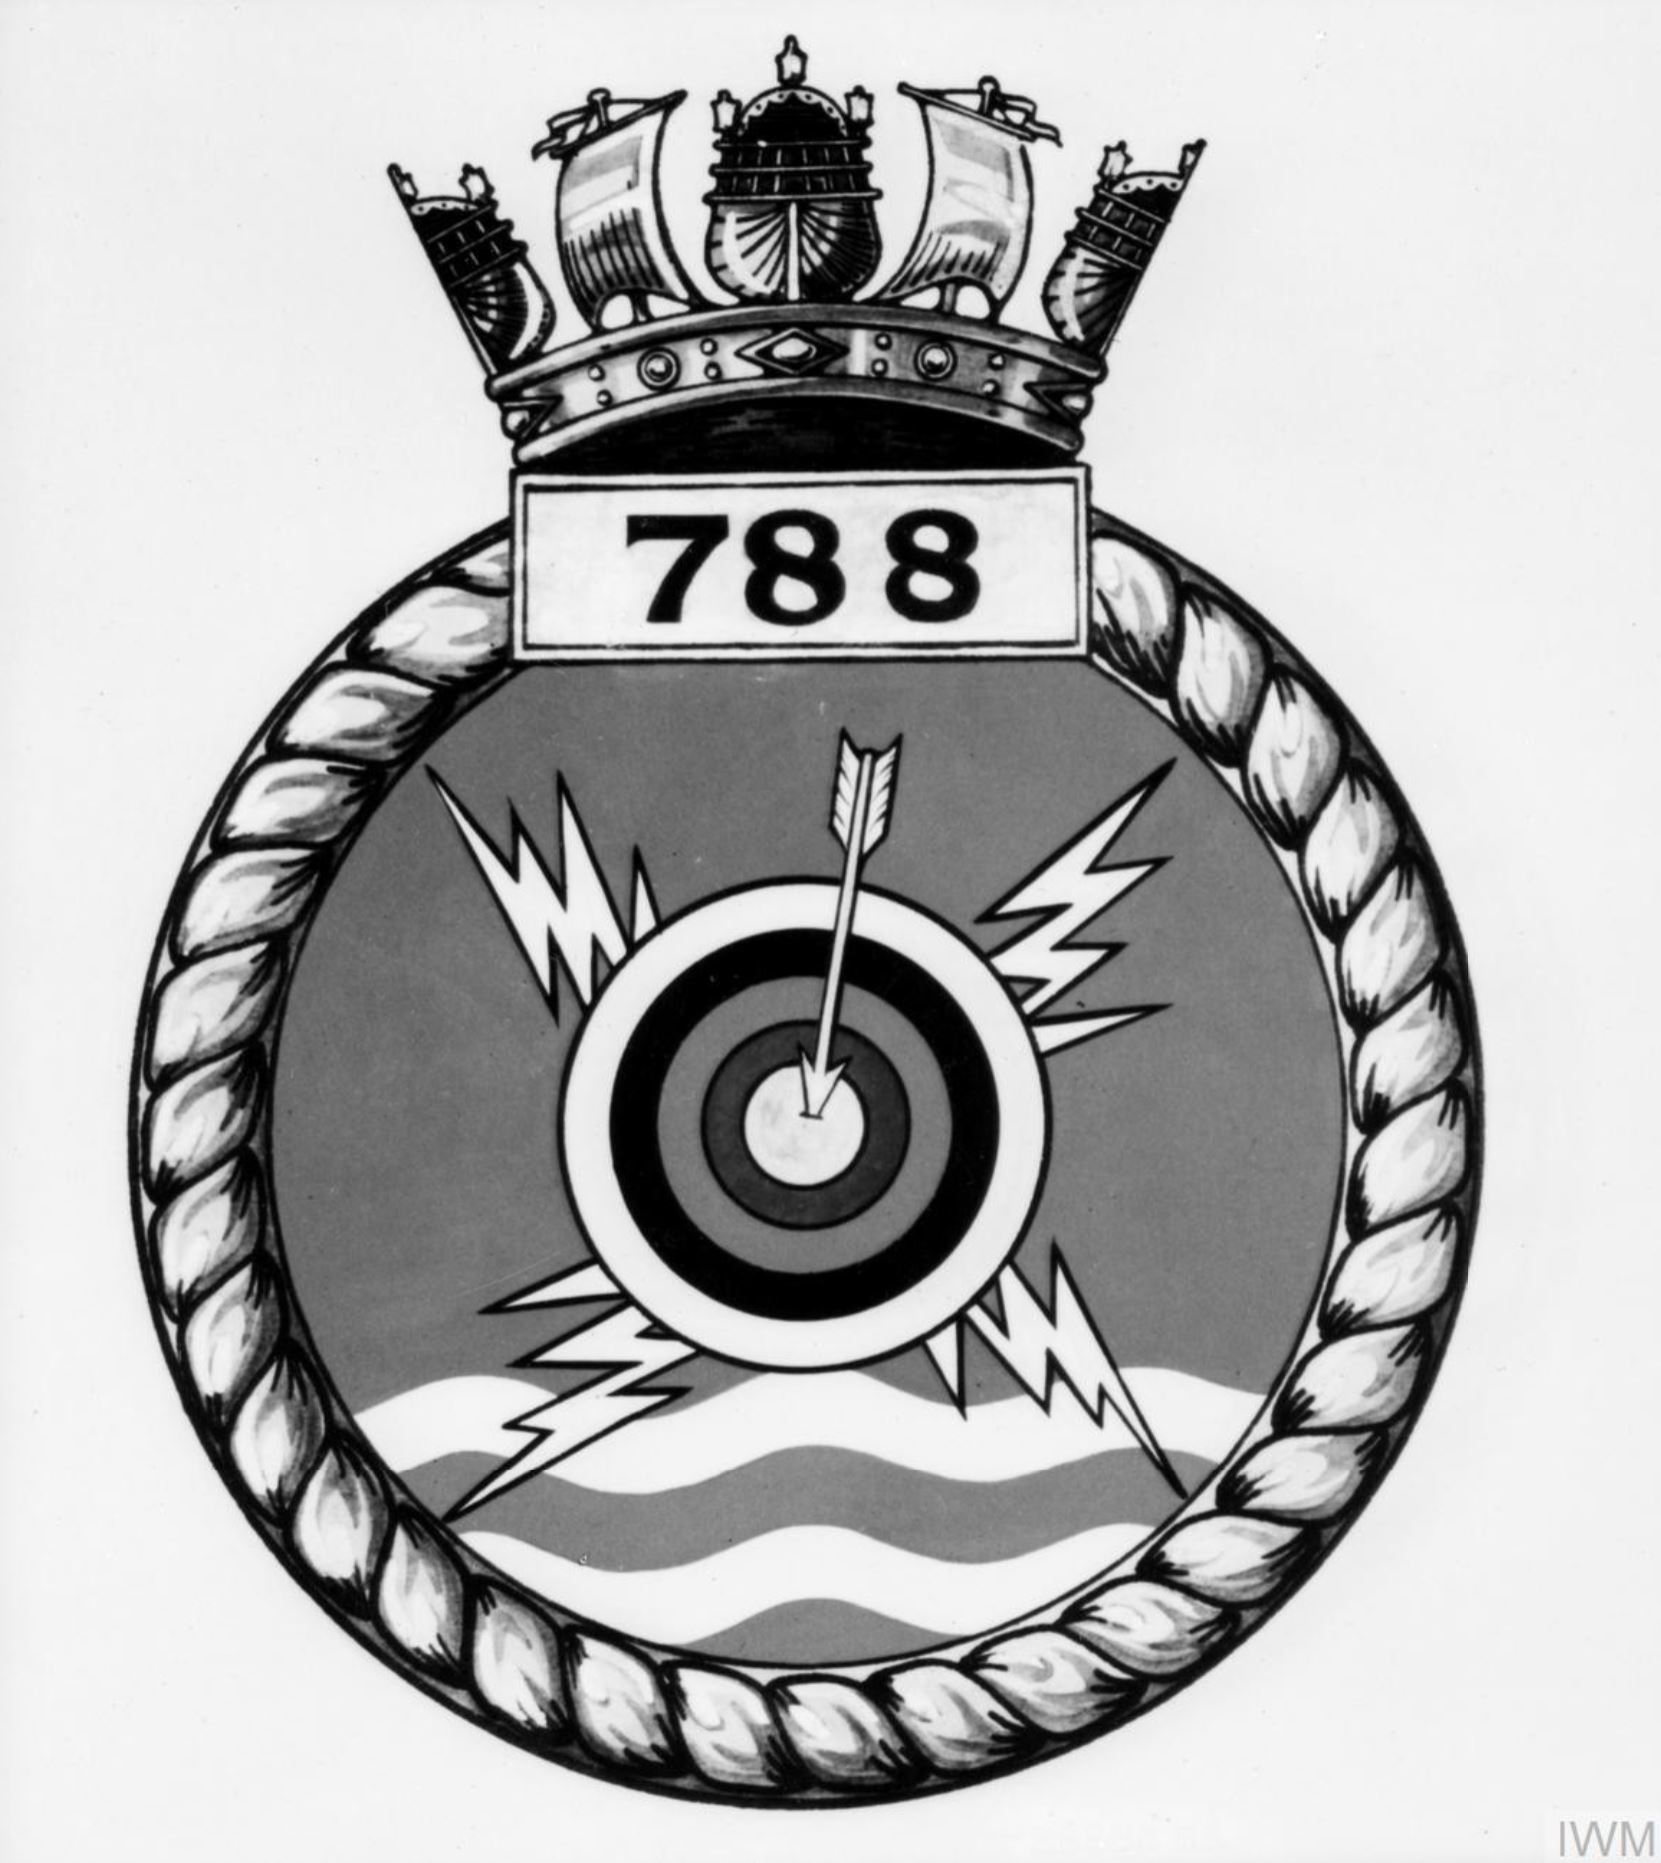 Fleet Air Arm crest of 788 Squadron IWM A26770